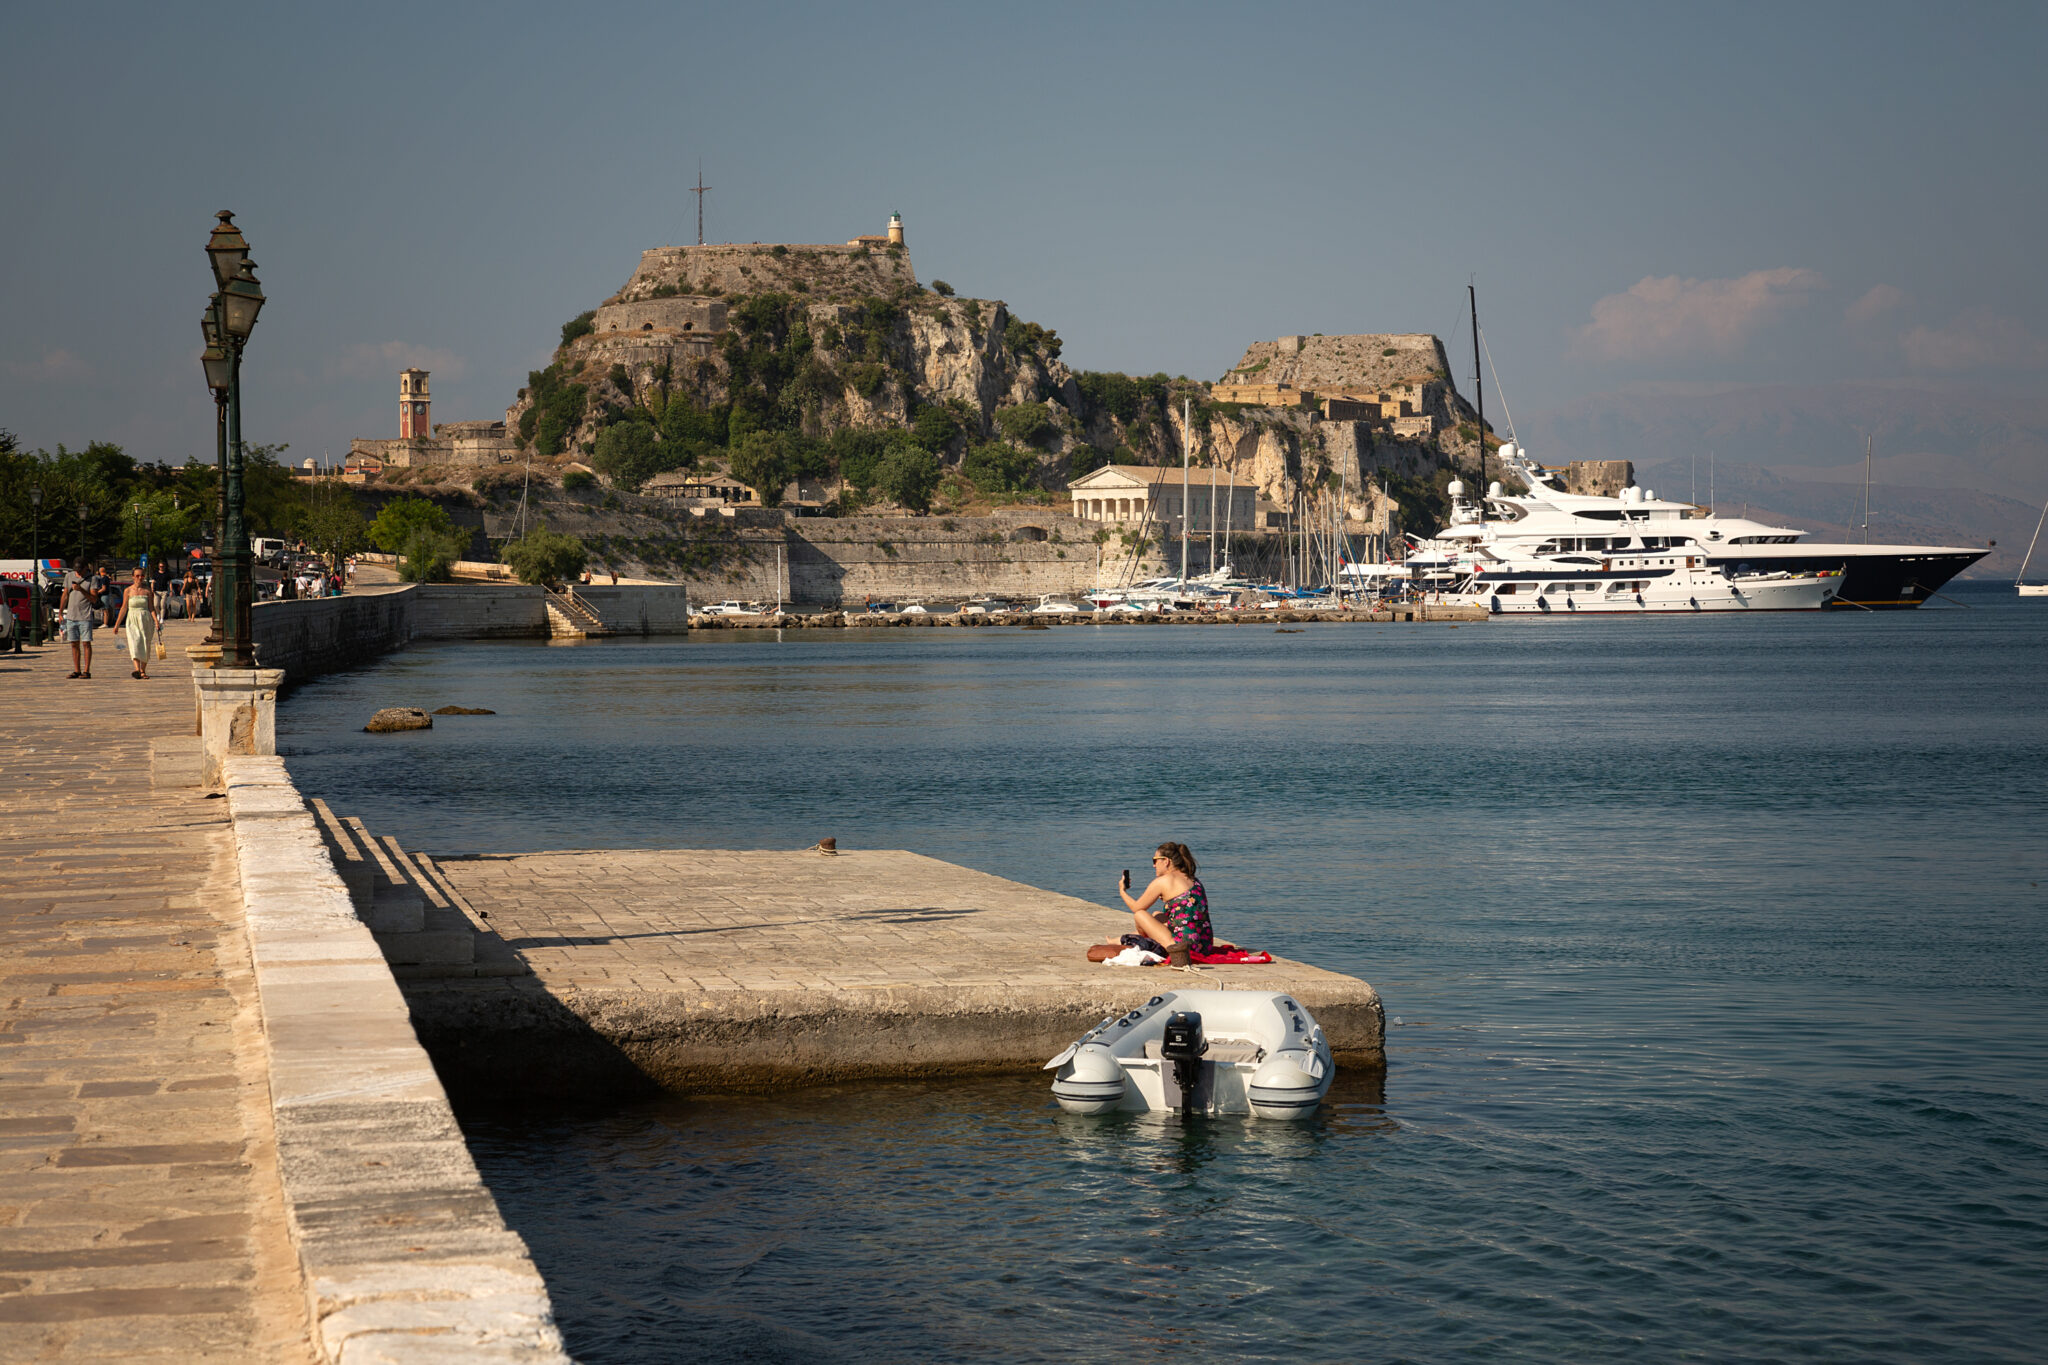 Οι ελληνικοί προορισμοί ανάμεσα στις κορυφαίες διεθνείς ταξιδιωτικές αναζητήσεις για το καλοκαίρι